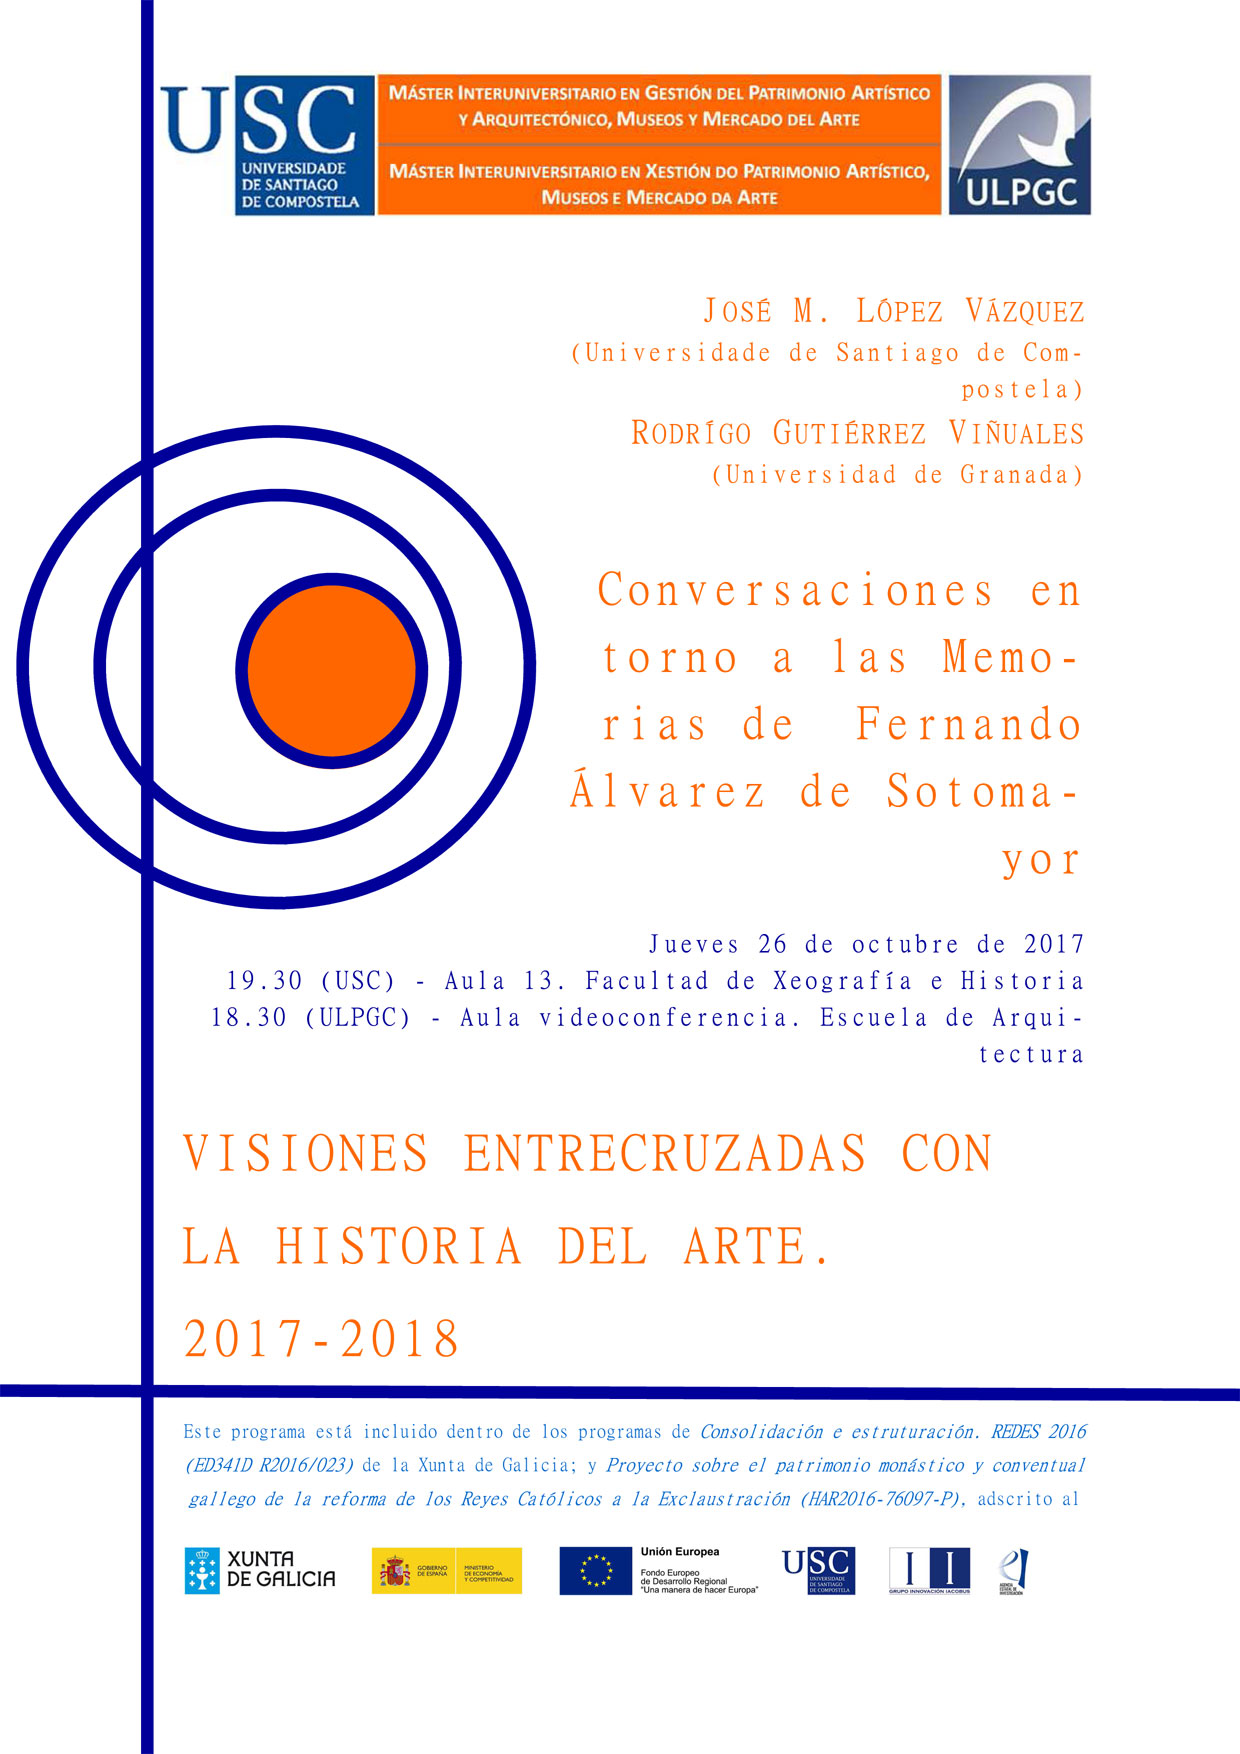 Visiones entrecruzadas con la Historia del Arte. Conversaciones en torno a las Memorias de Fernando Álvarez de Sotomayor